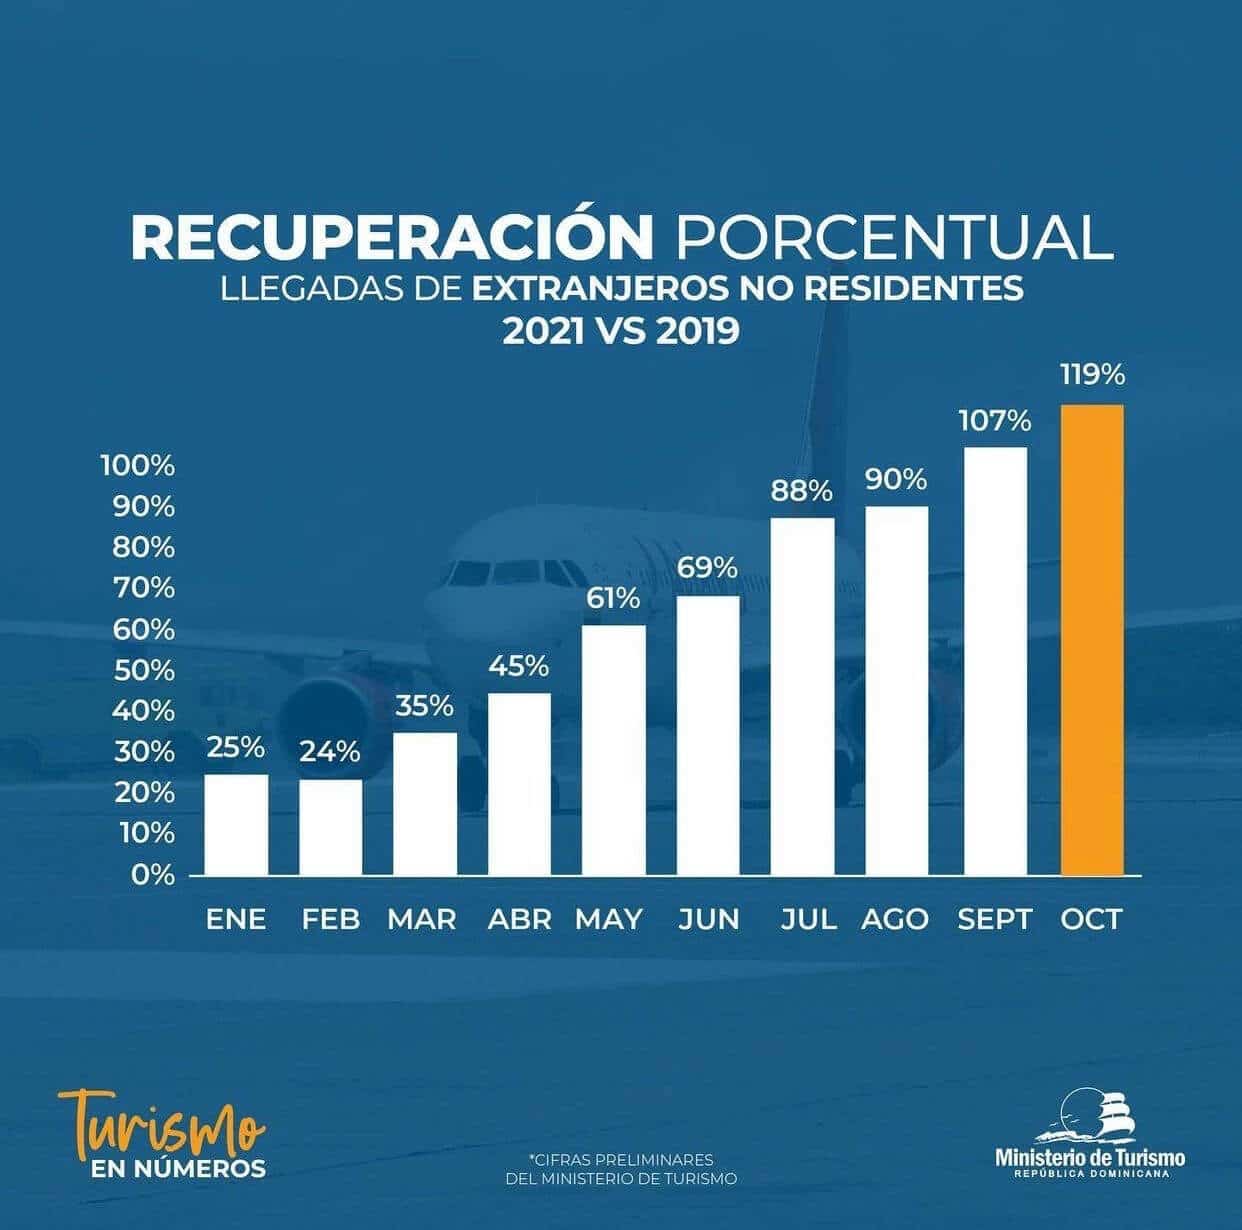 Prozentsatz Erholung Tourismus Dominikanische Republik